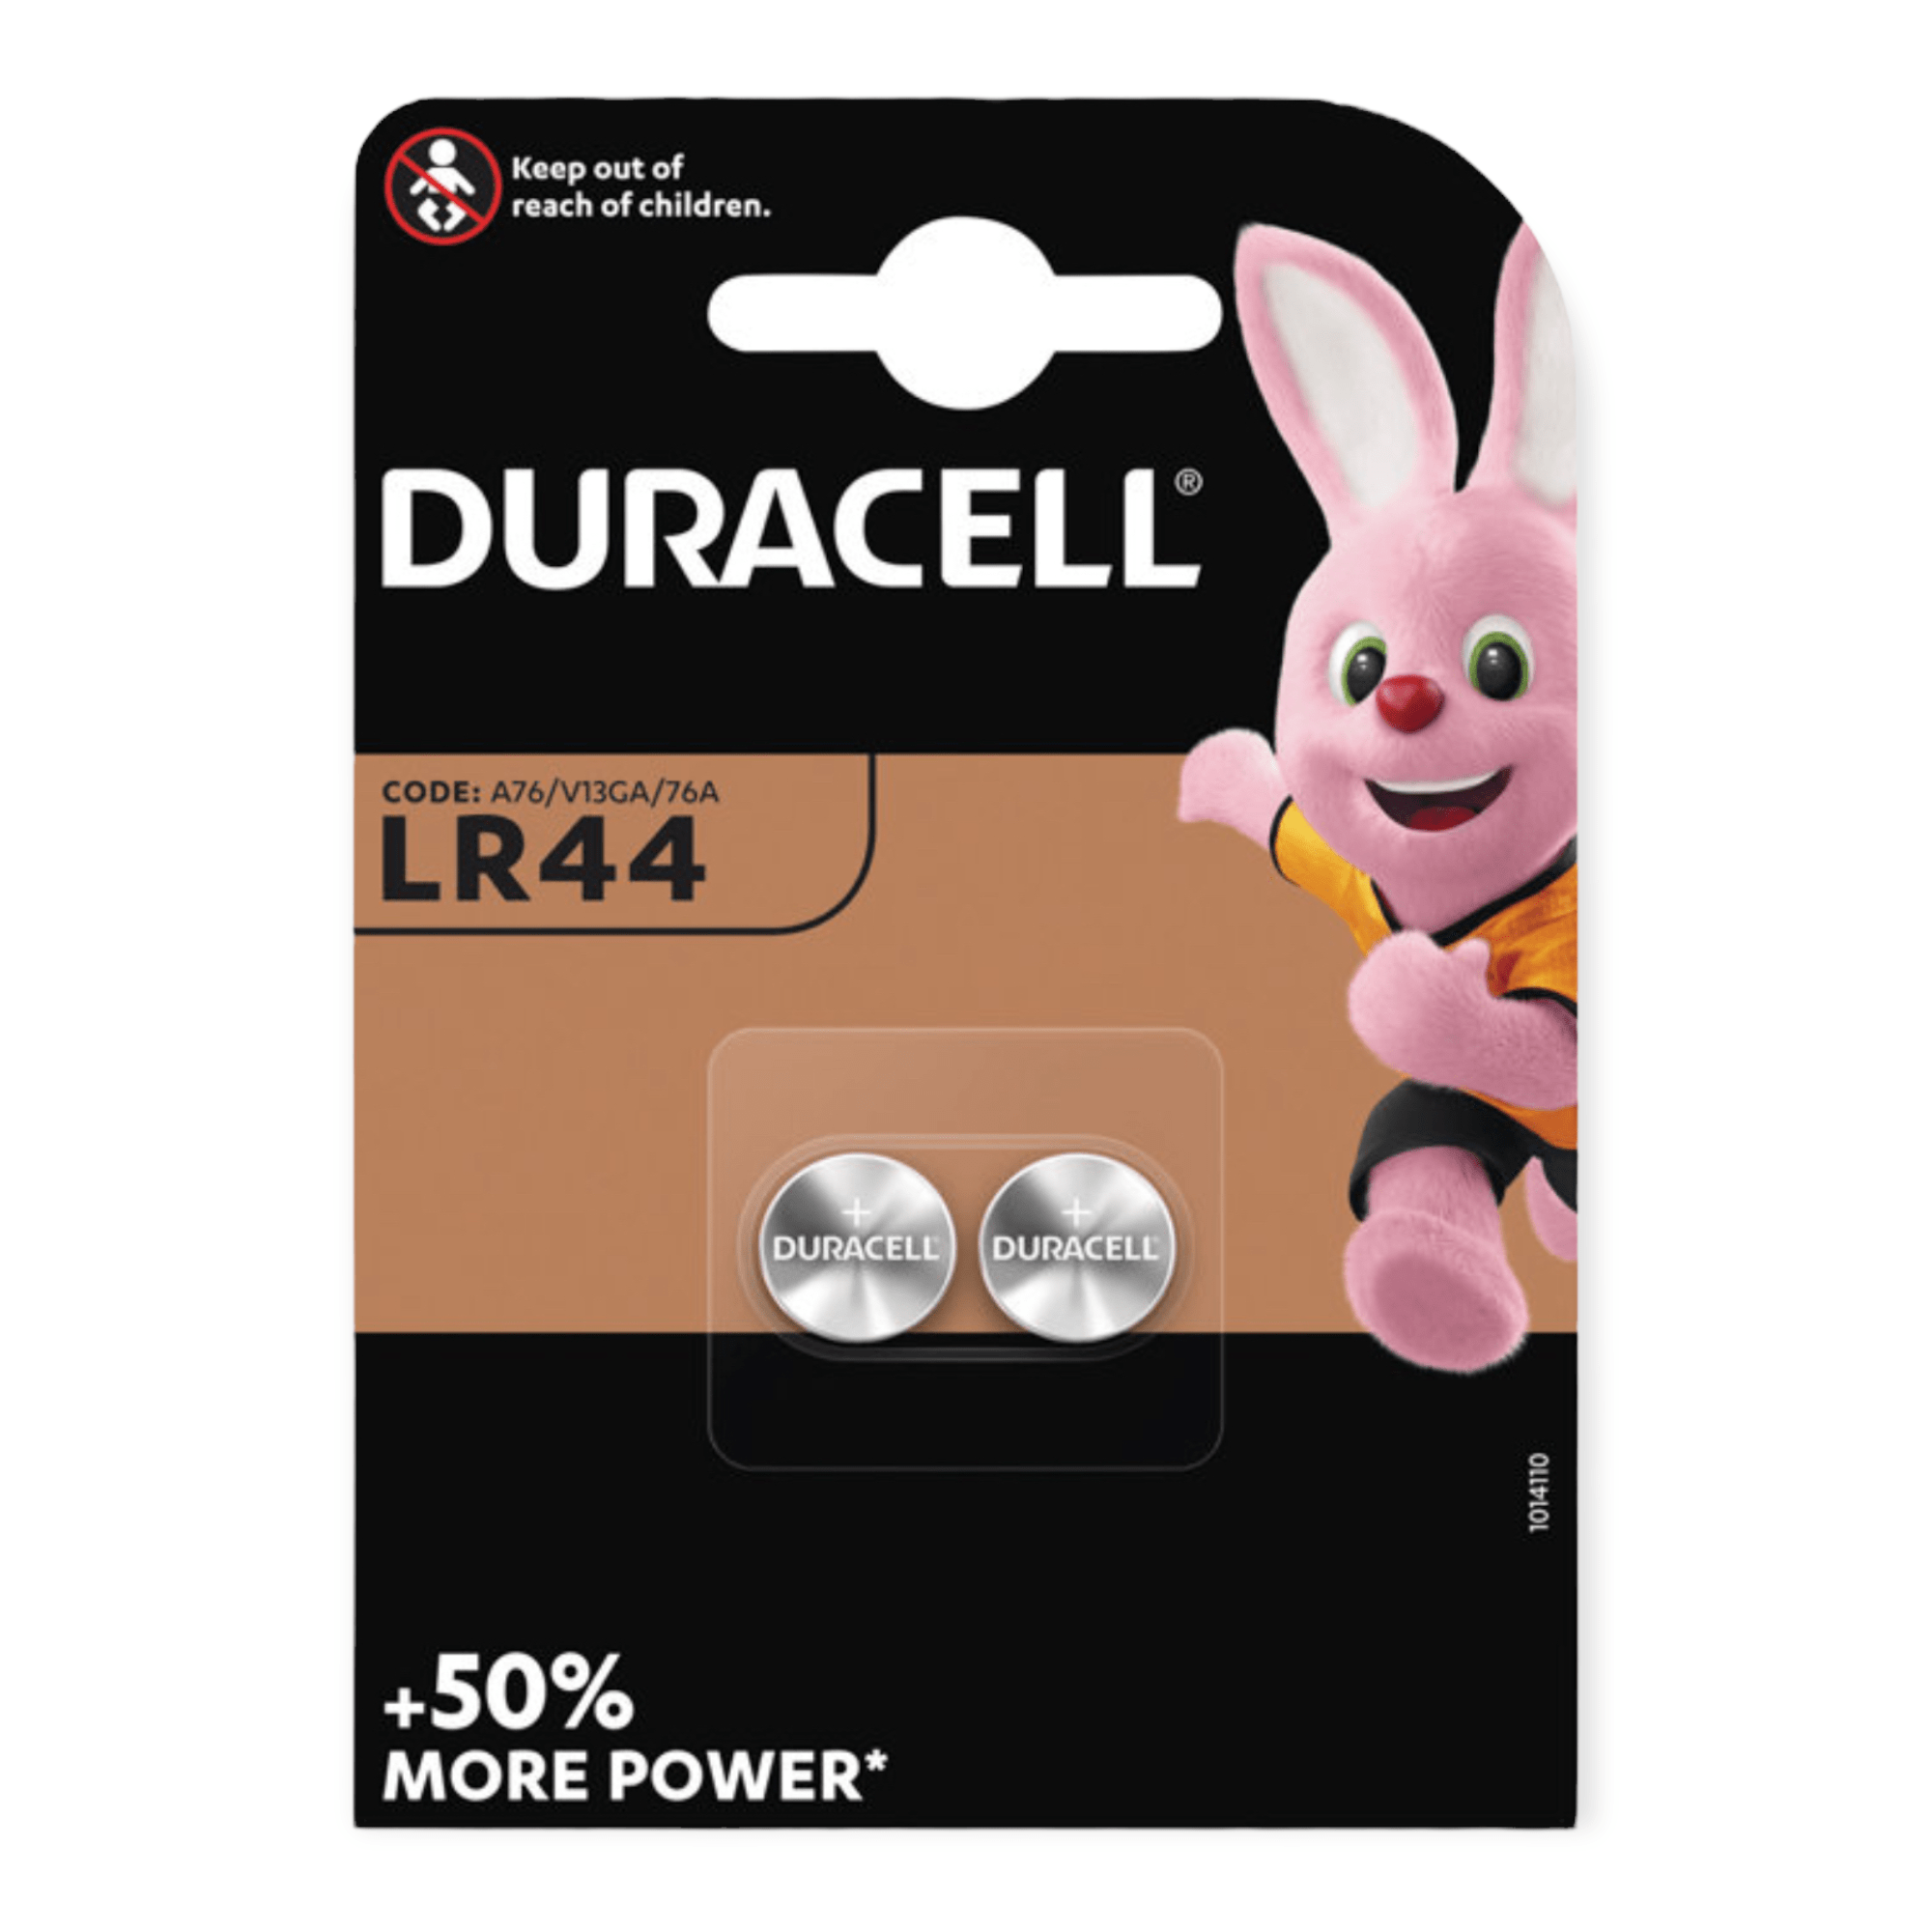 Billede af Duracell knapcellebatterier LR44 2-pk.